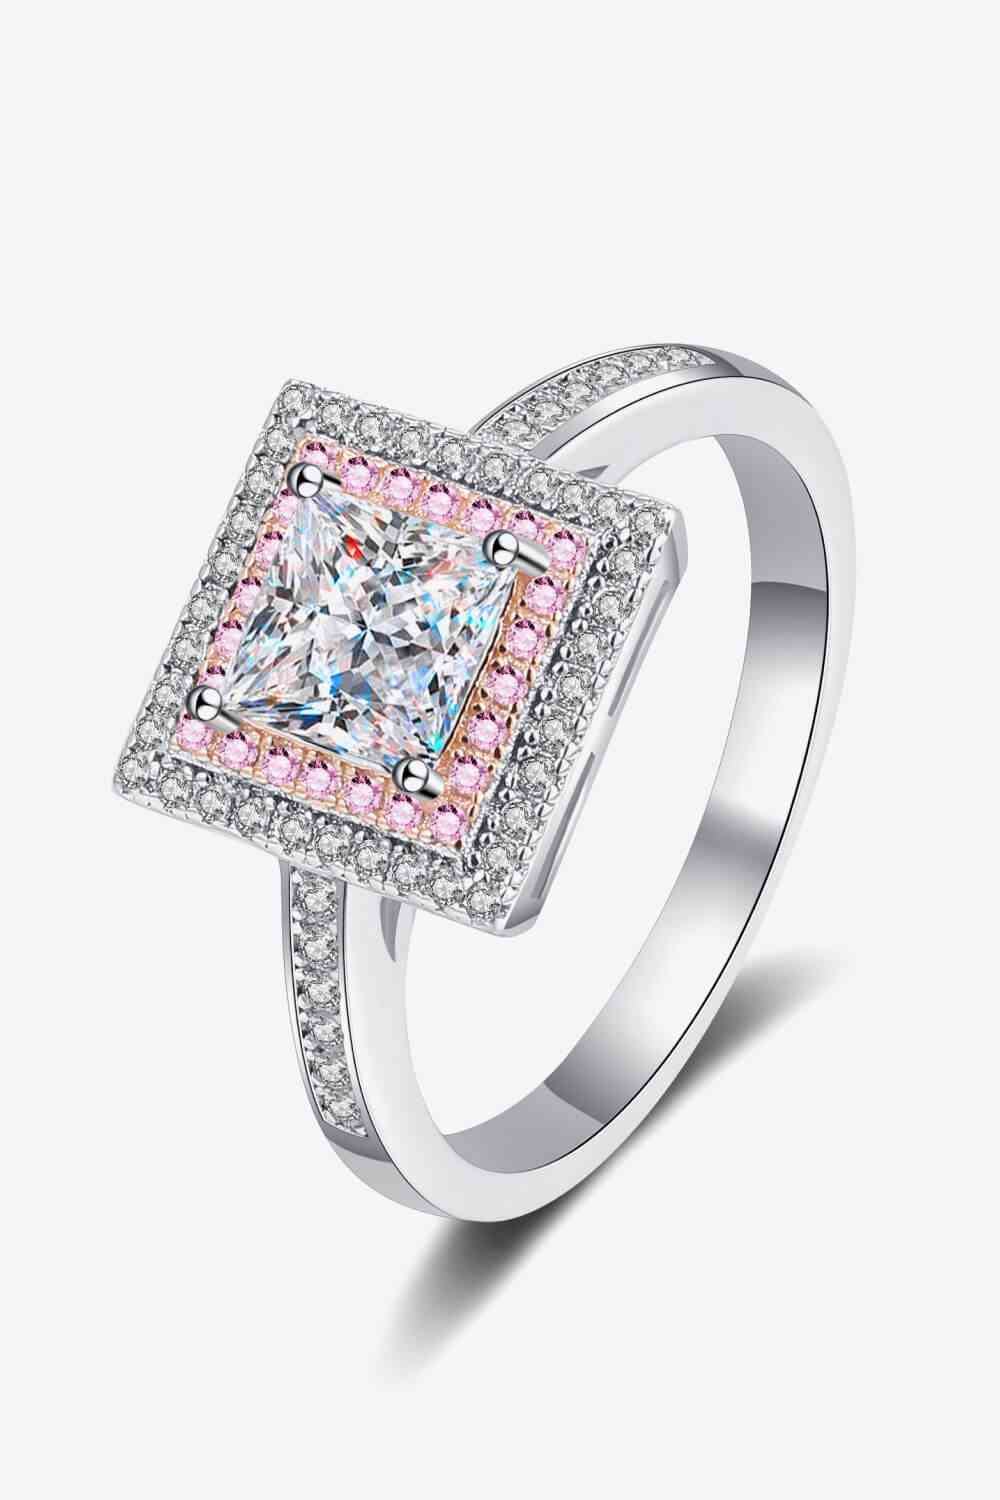 Stay Elegant 1 Carat Moissanite Ring - Stardust Diamonds